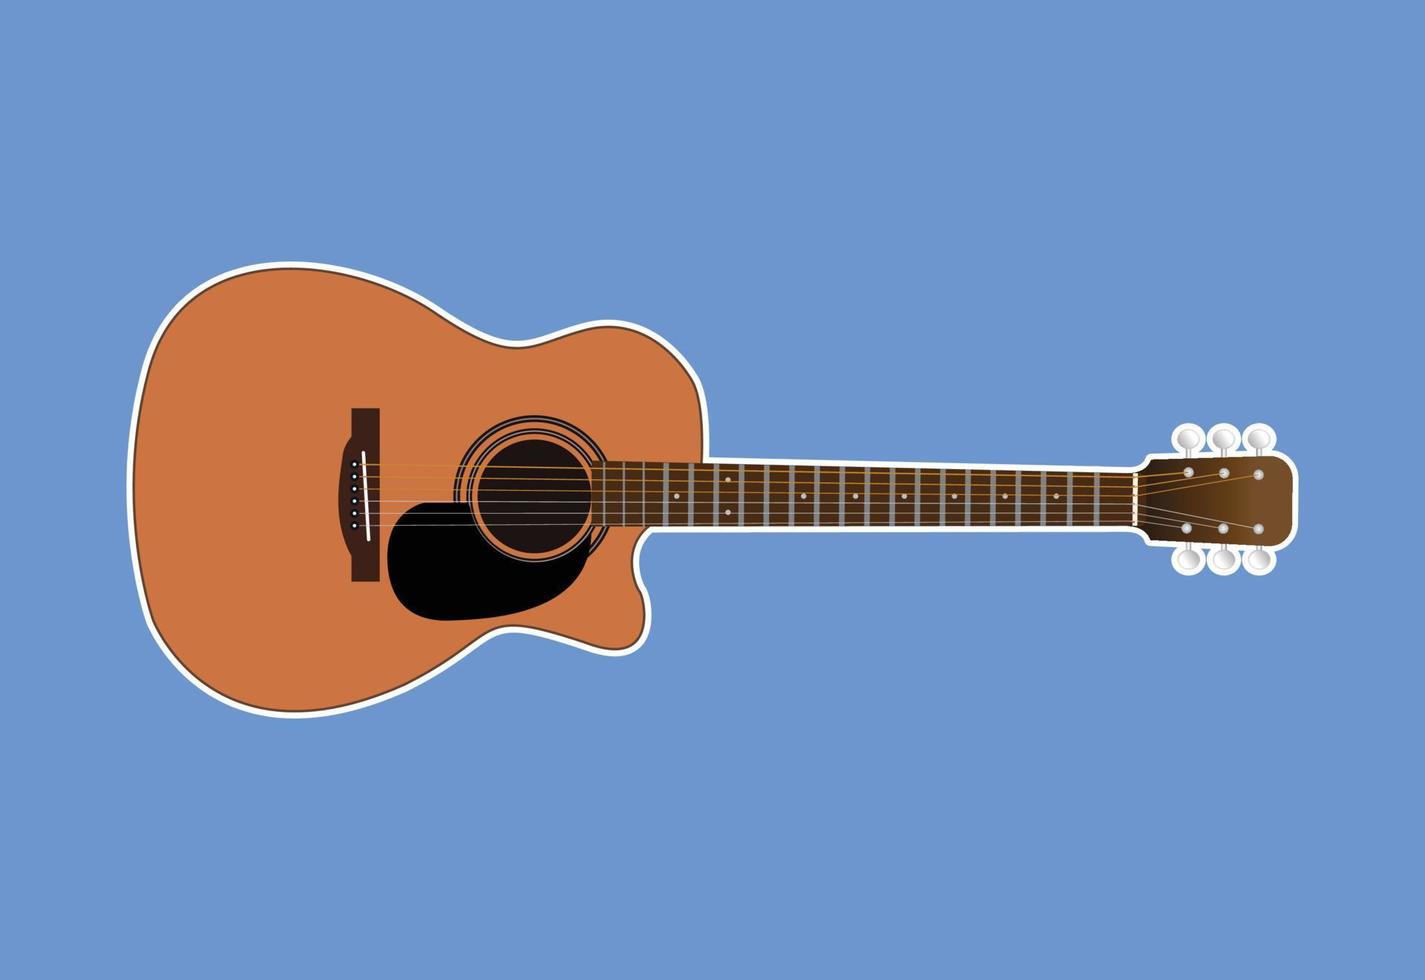 guitarra acústica, aislada en fondo blanco, utilizada para tocar música y notas, ilustración vectorial. vector